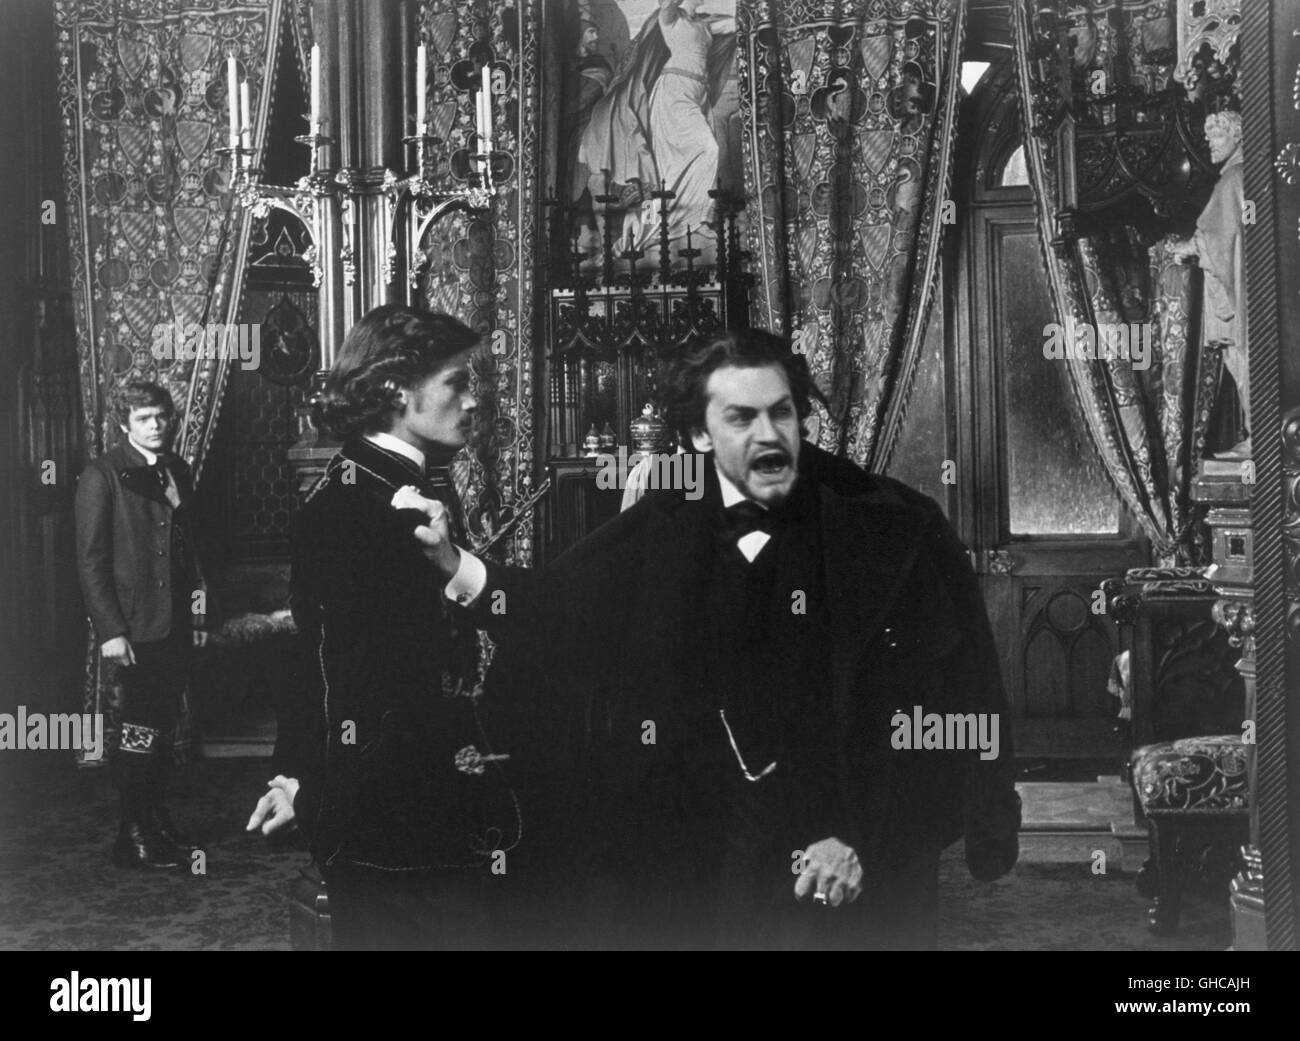 LUDWIG-Frankreich/Italien/BRd 1972 Luchino Visconti HELMUT BERGER (rechts) als König Ludwig II. desillusioniert und abgeführt. Regie: Luchino Visconti Stockfoto